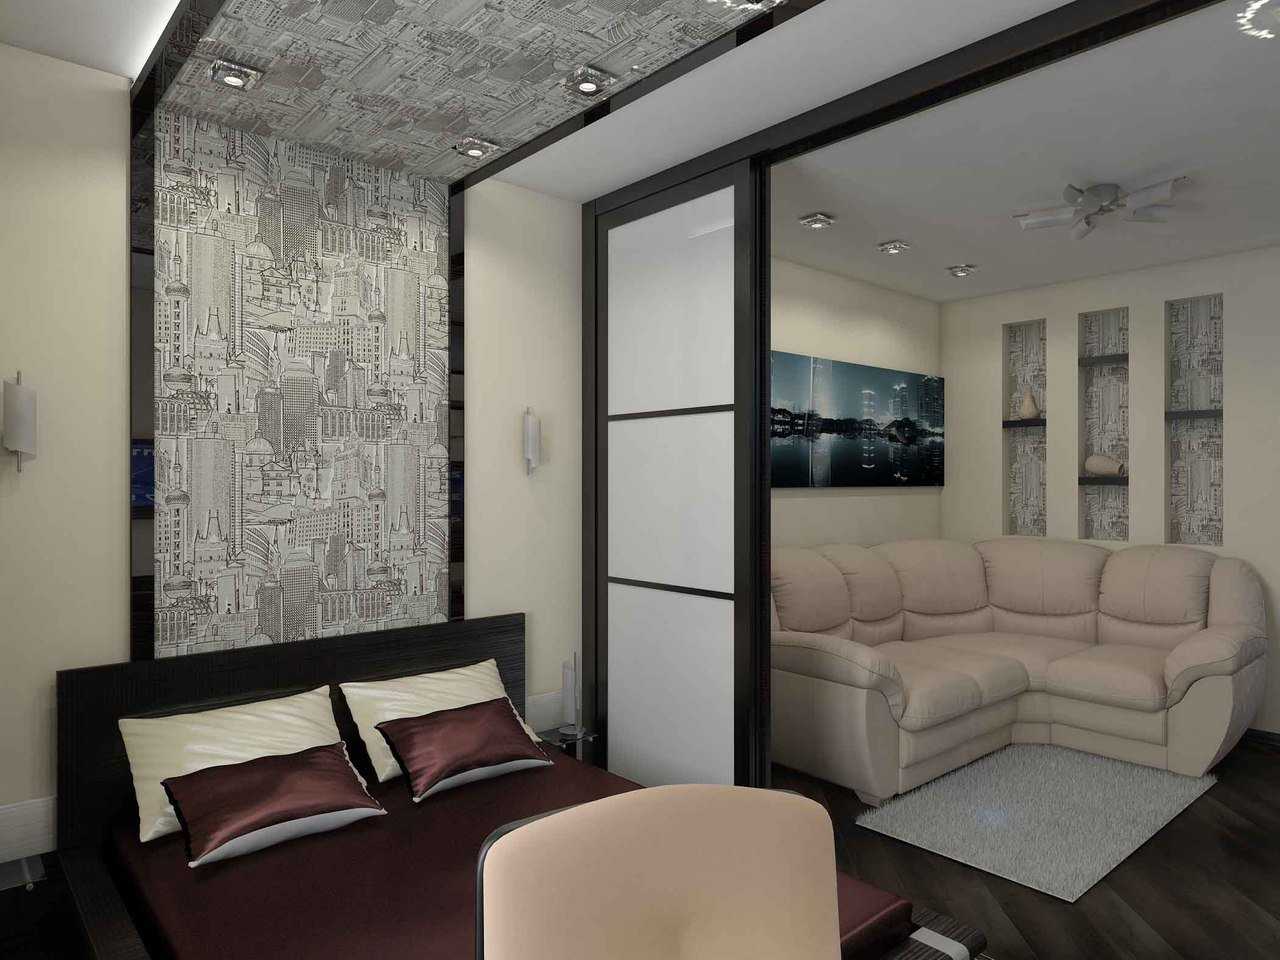 Гостиная 18 кв. м. — обзор лучших вариантов дизайна, фото, идеи планировки, выбор мебели, варианты отделки, зонирование